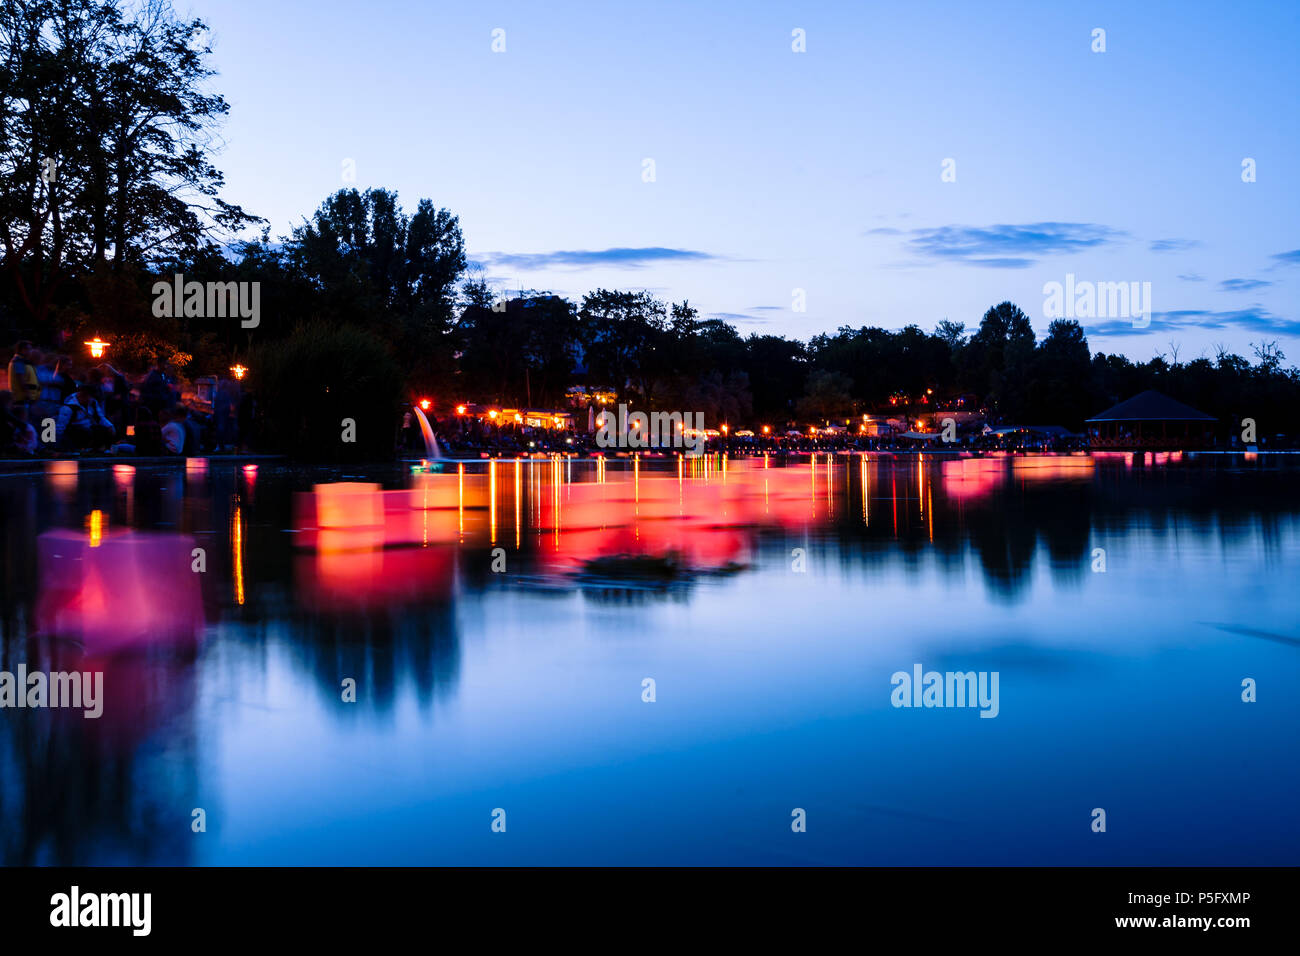 Desidero lanterne riflessioni con le candele accese sul lago a notte d'estate. I tempi di esposizione lunghi Foto Stock